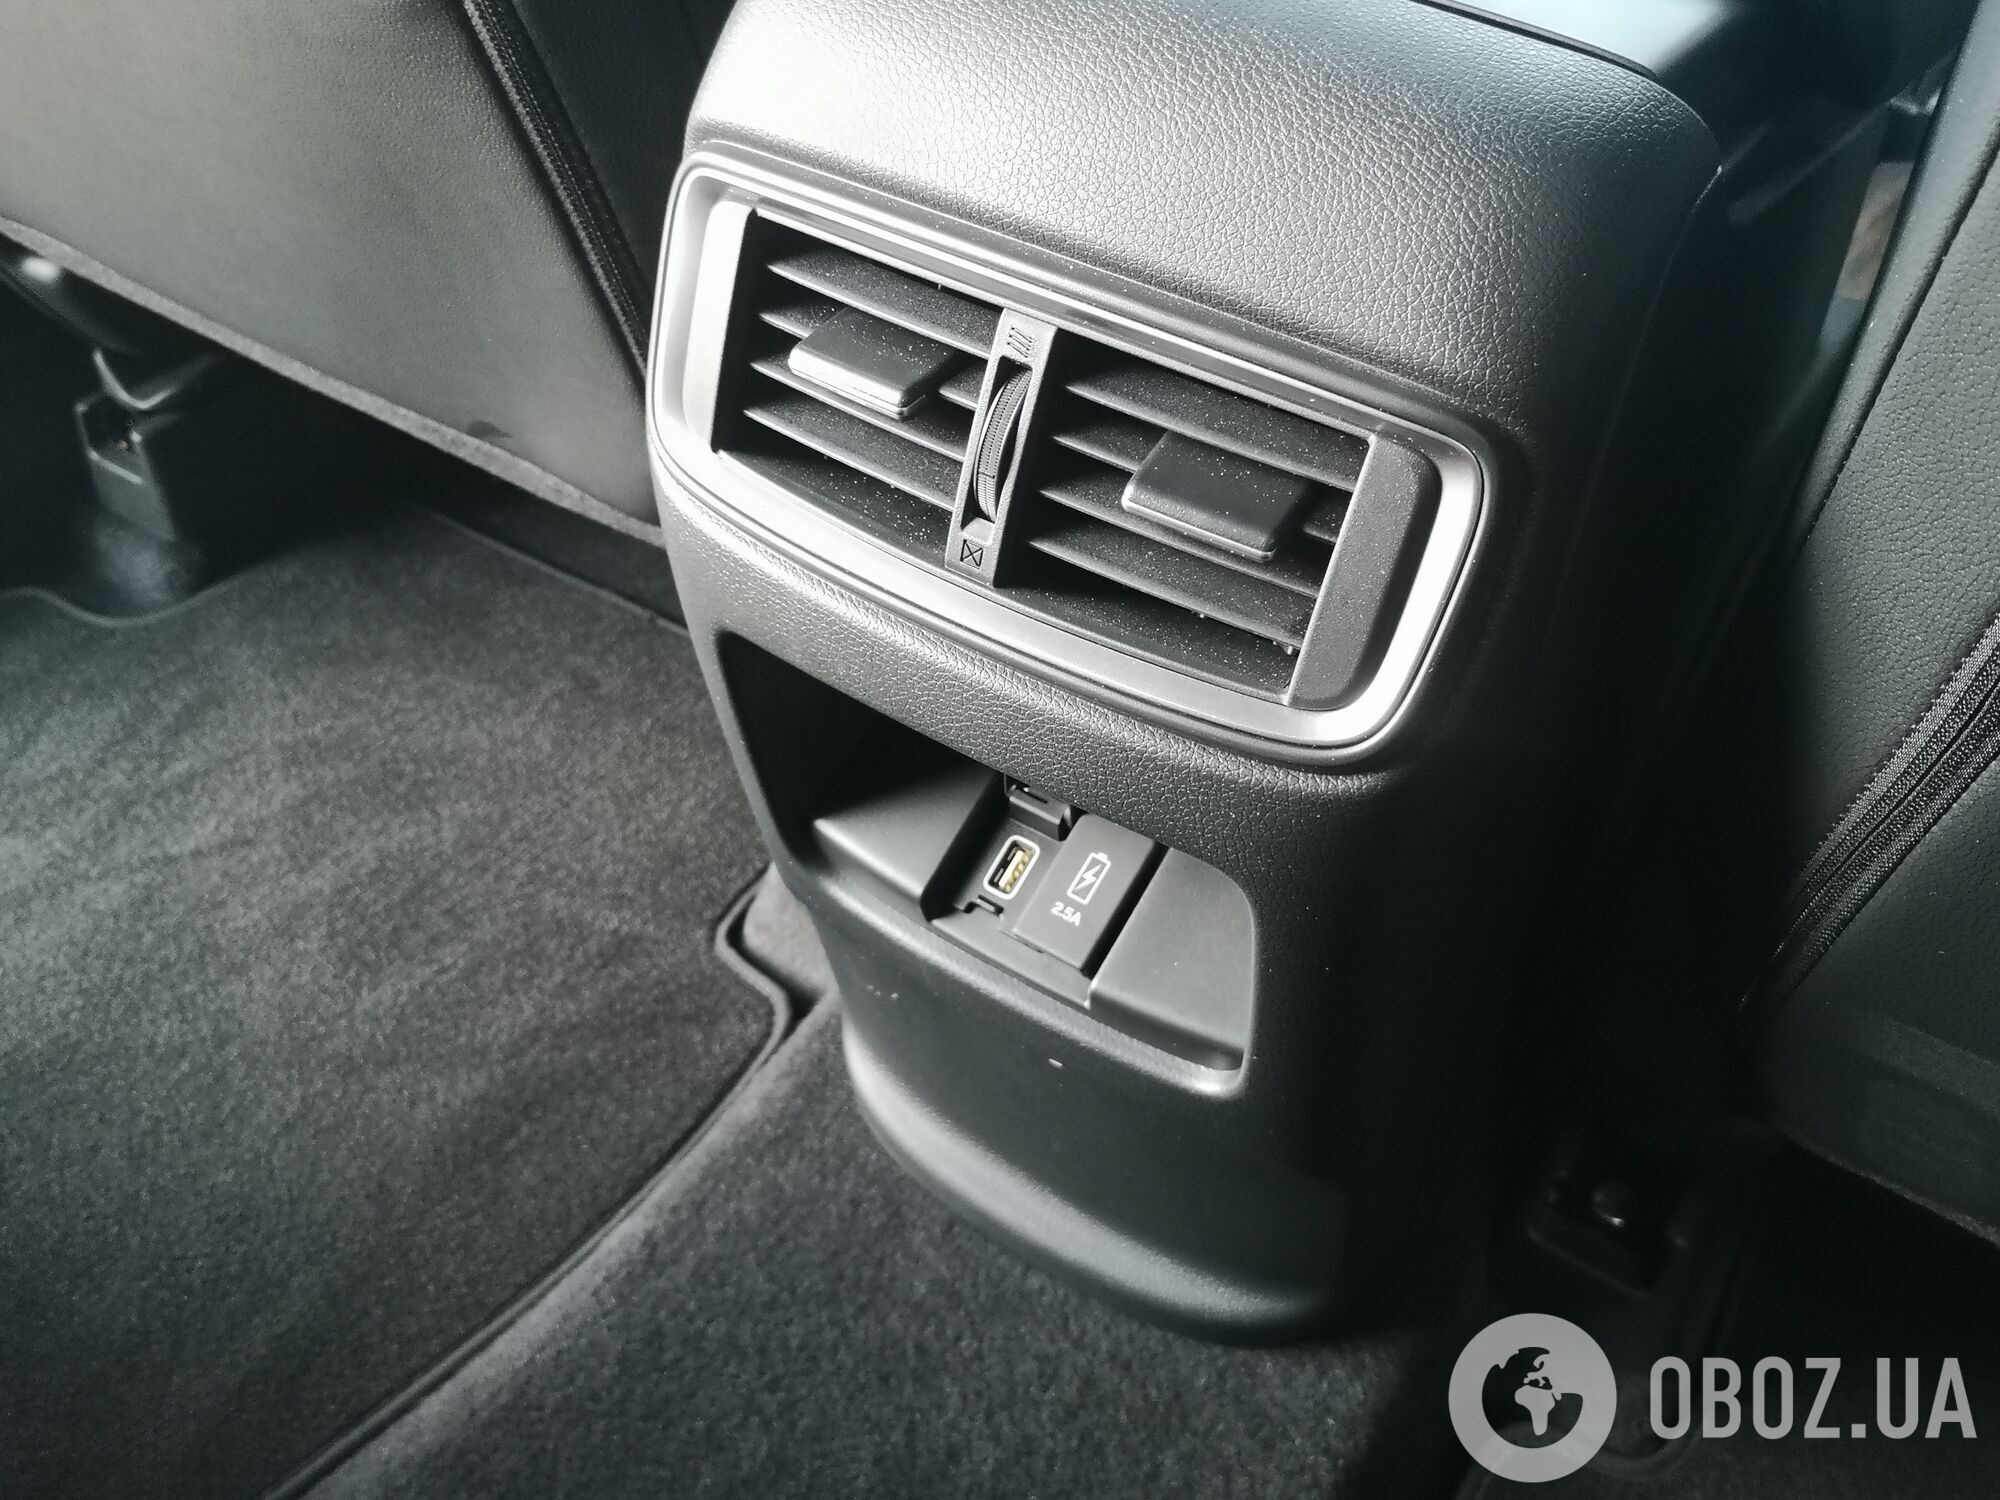 Для задних пассажиров предлагаются индивидуальные дефлекторы системы обогрева и вентиляции, а также два USB-разъема на 2,5 А каждый. Фото: